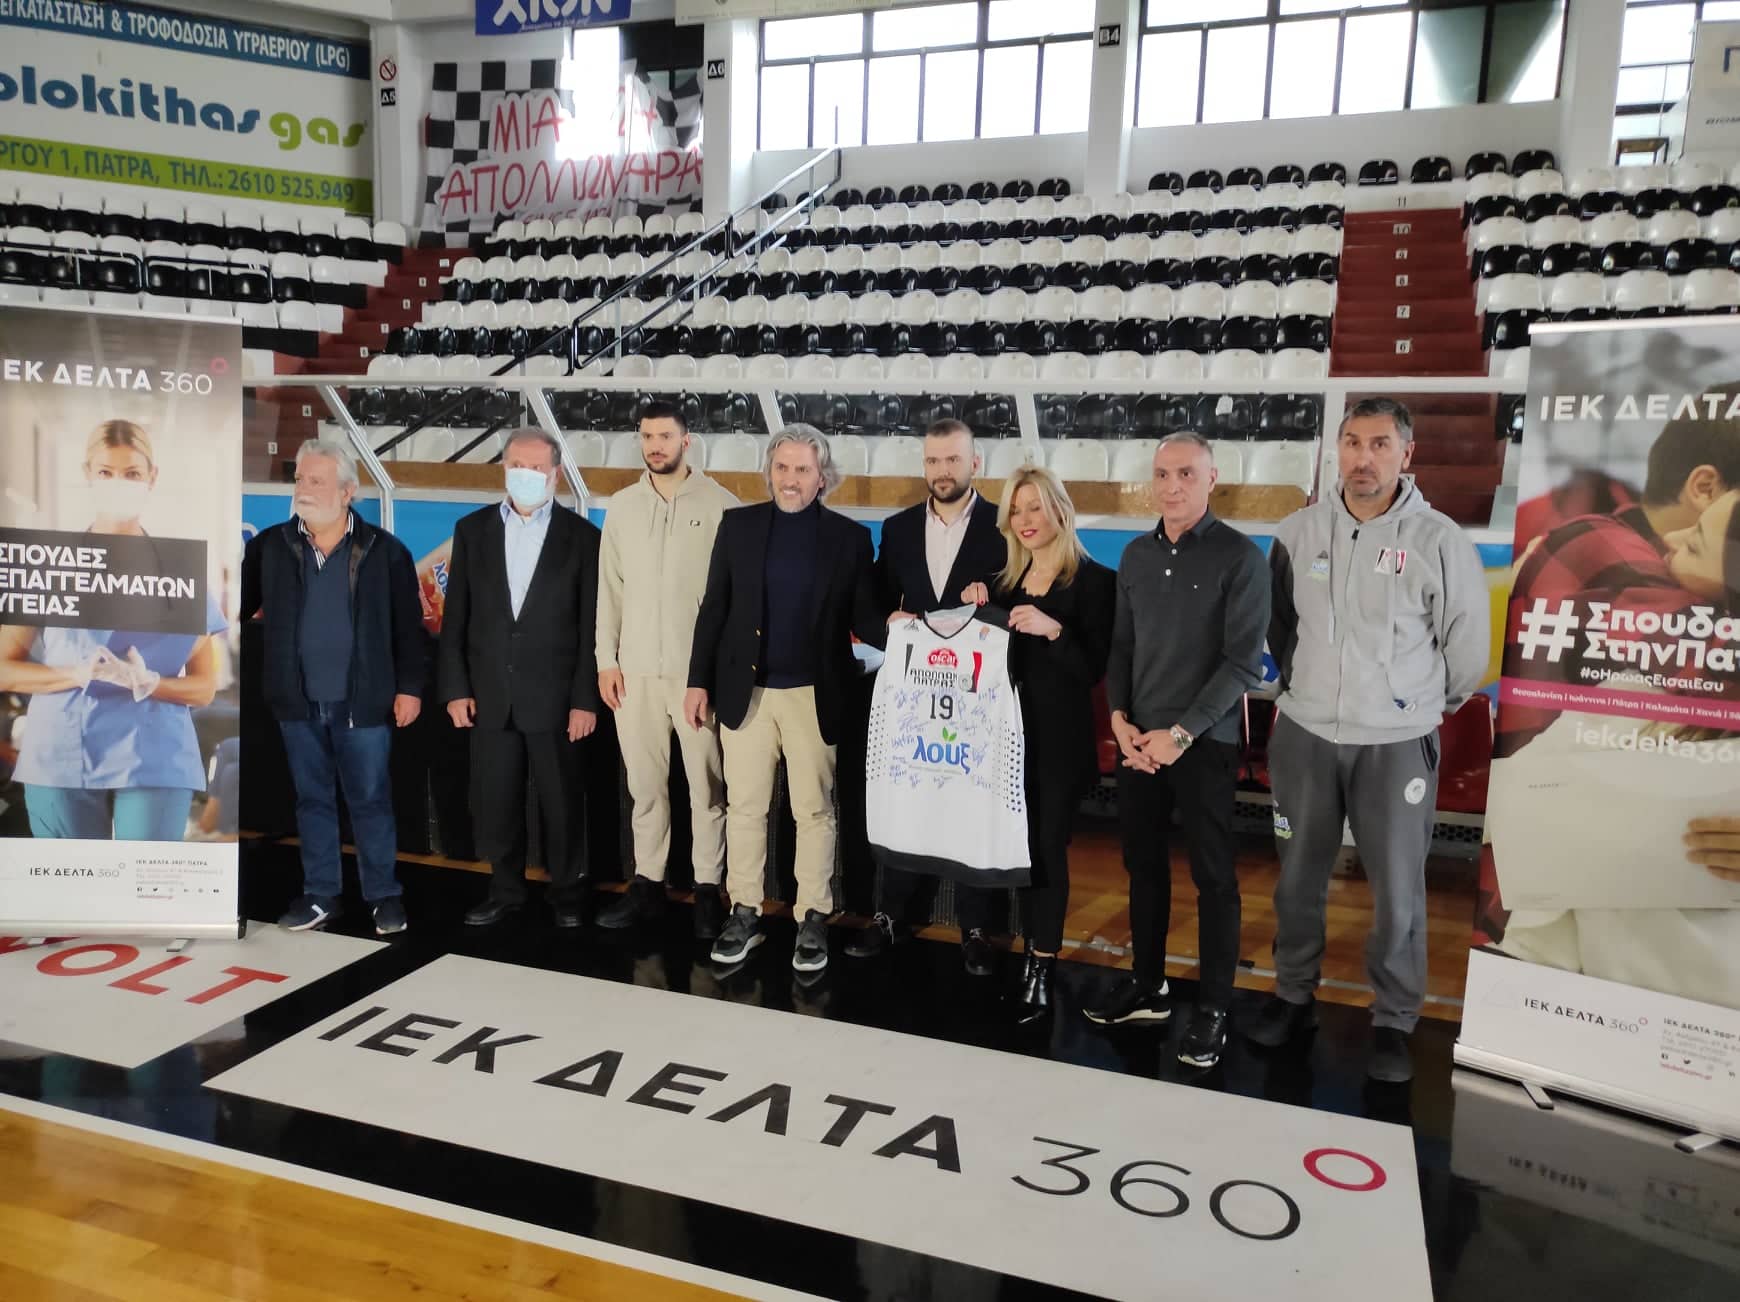 Απόλλωνας και ΙΕΚ ΔΕΛΤΑ 360 ανακοίνωσαν τη συνεργασία  τους